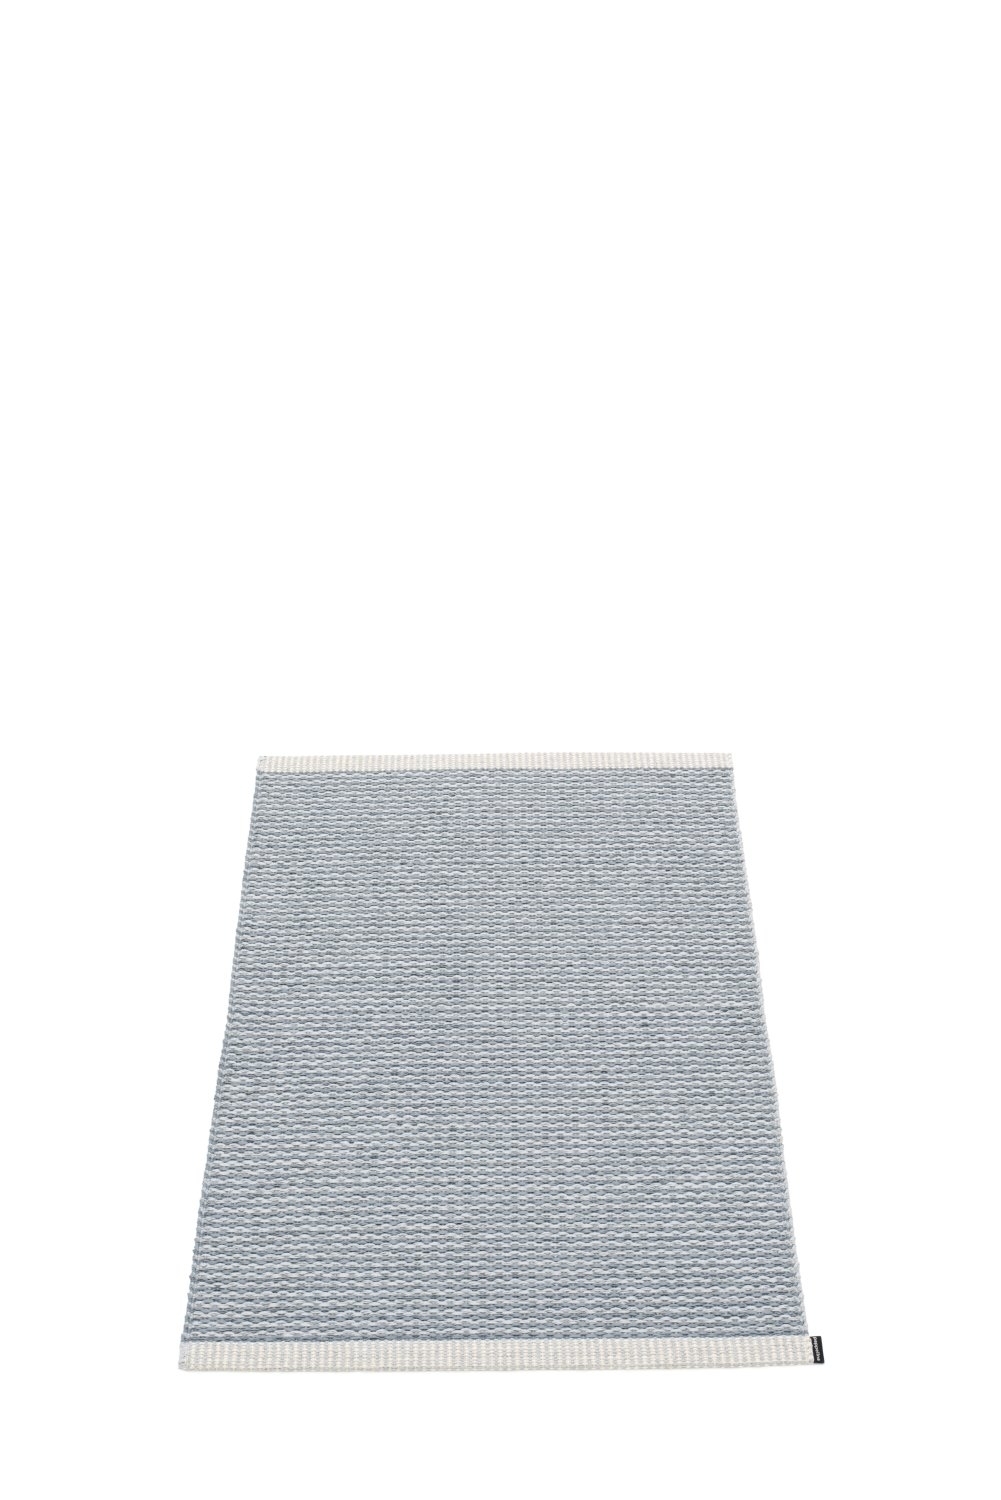 Mono Teppich Grau 85 x 260 cm 0